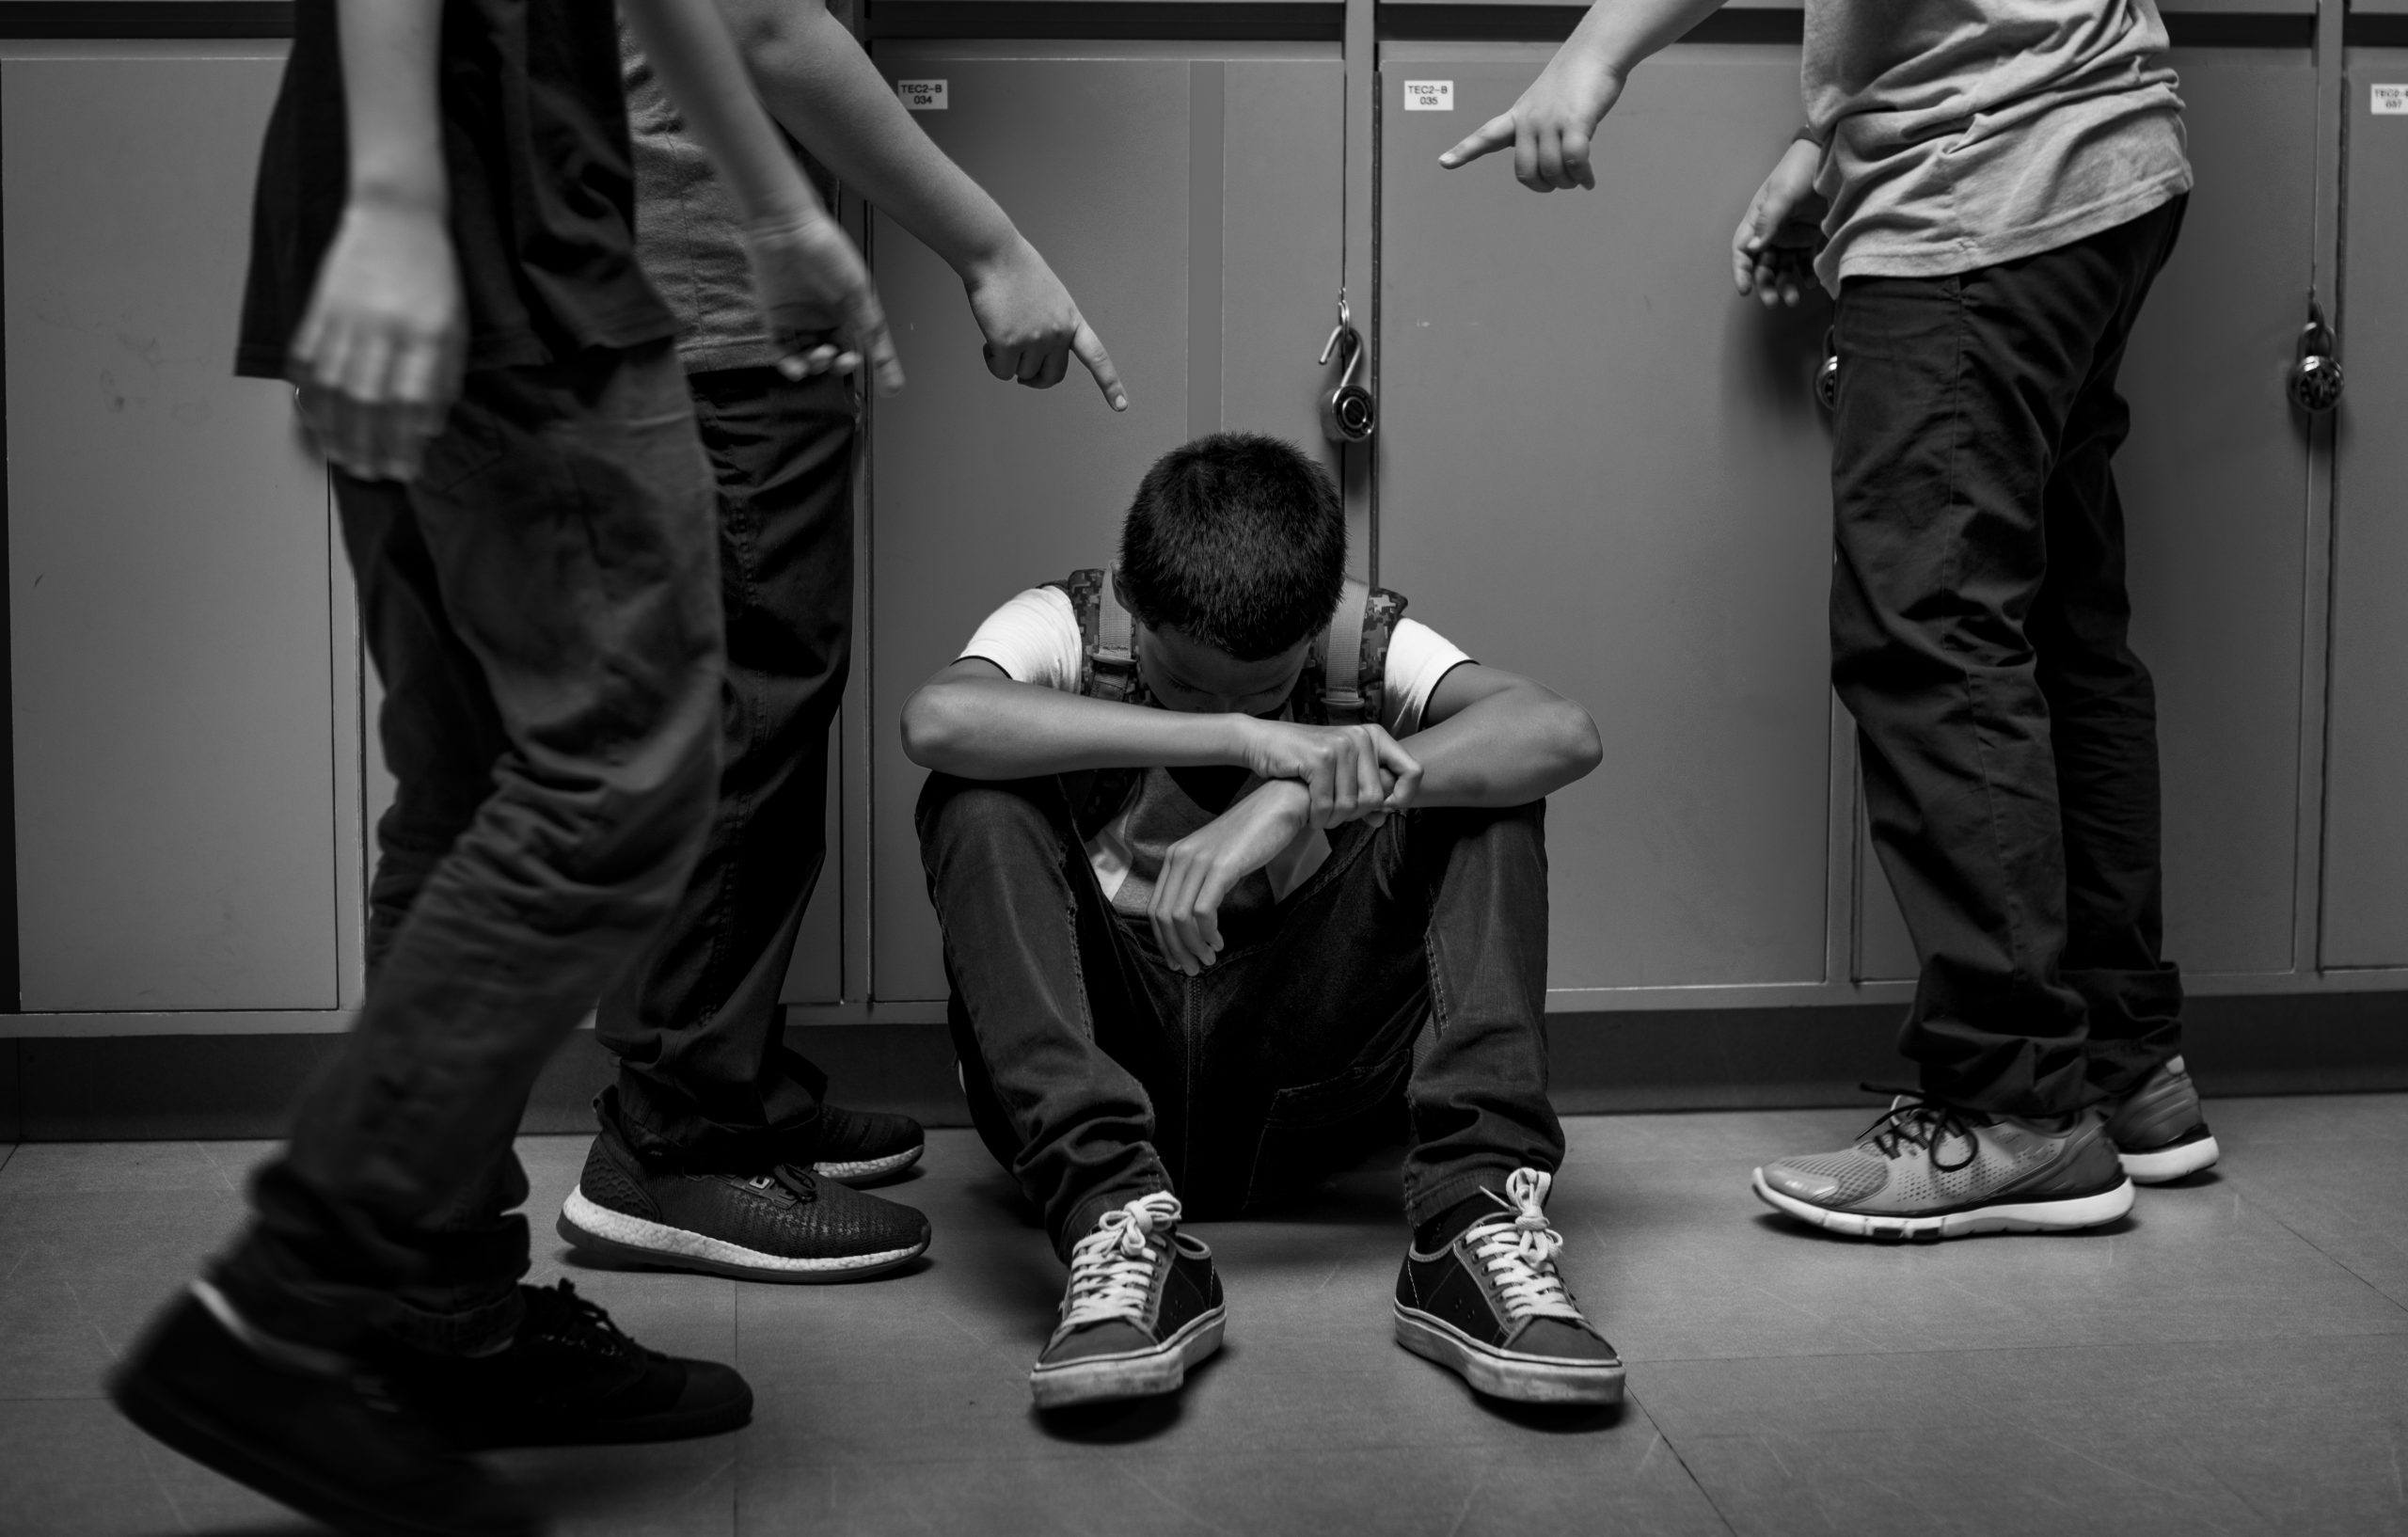 Zlostavljanje, dečak, dečaci, Ilustracija: Shutterstock